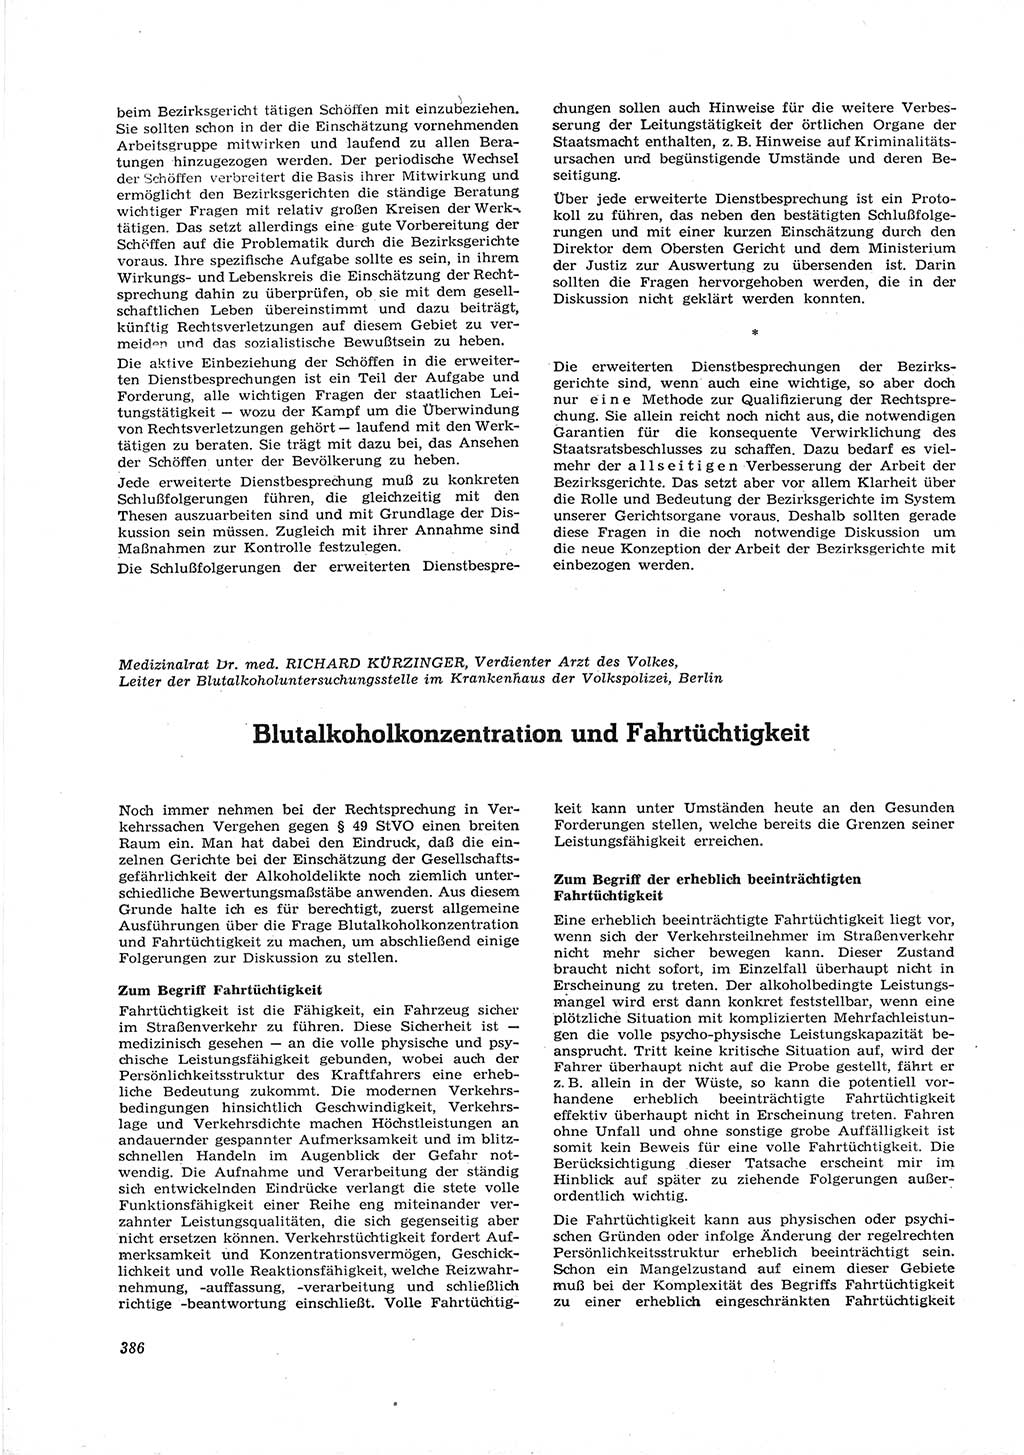 Neue Justiz (NJ), Zeitschrift für Recht und Rechtswissenschaft [Deutsche Demokratische Republik (DDR)], 16. Jahrgang 1962, Seite 386 (NJ DDR 1962, S. 386)